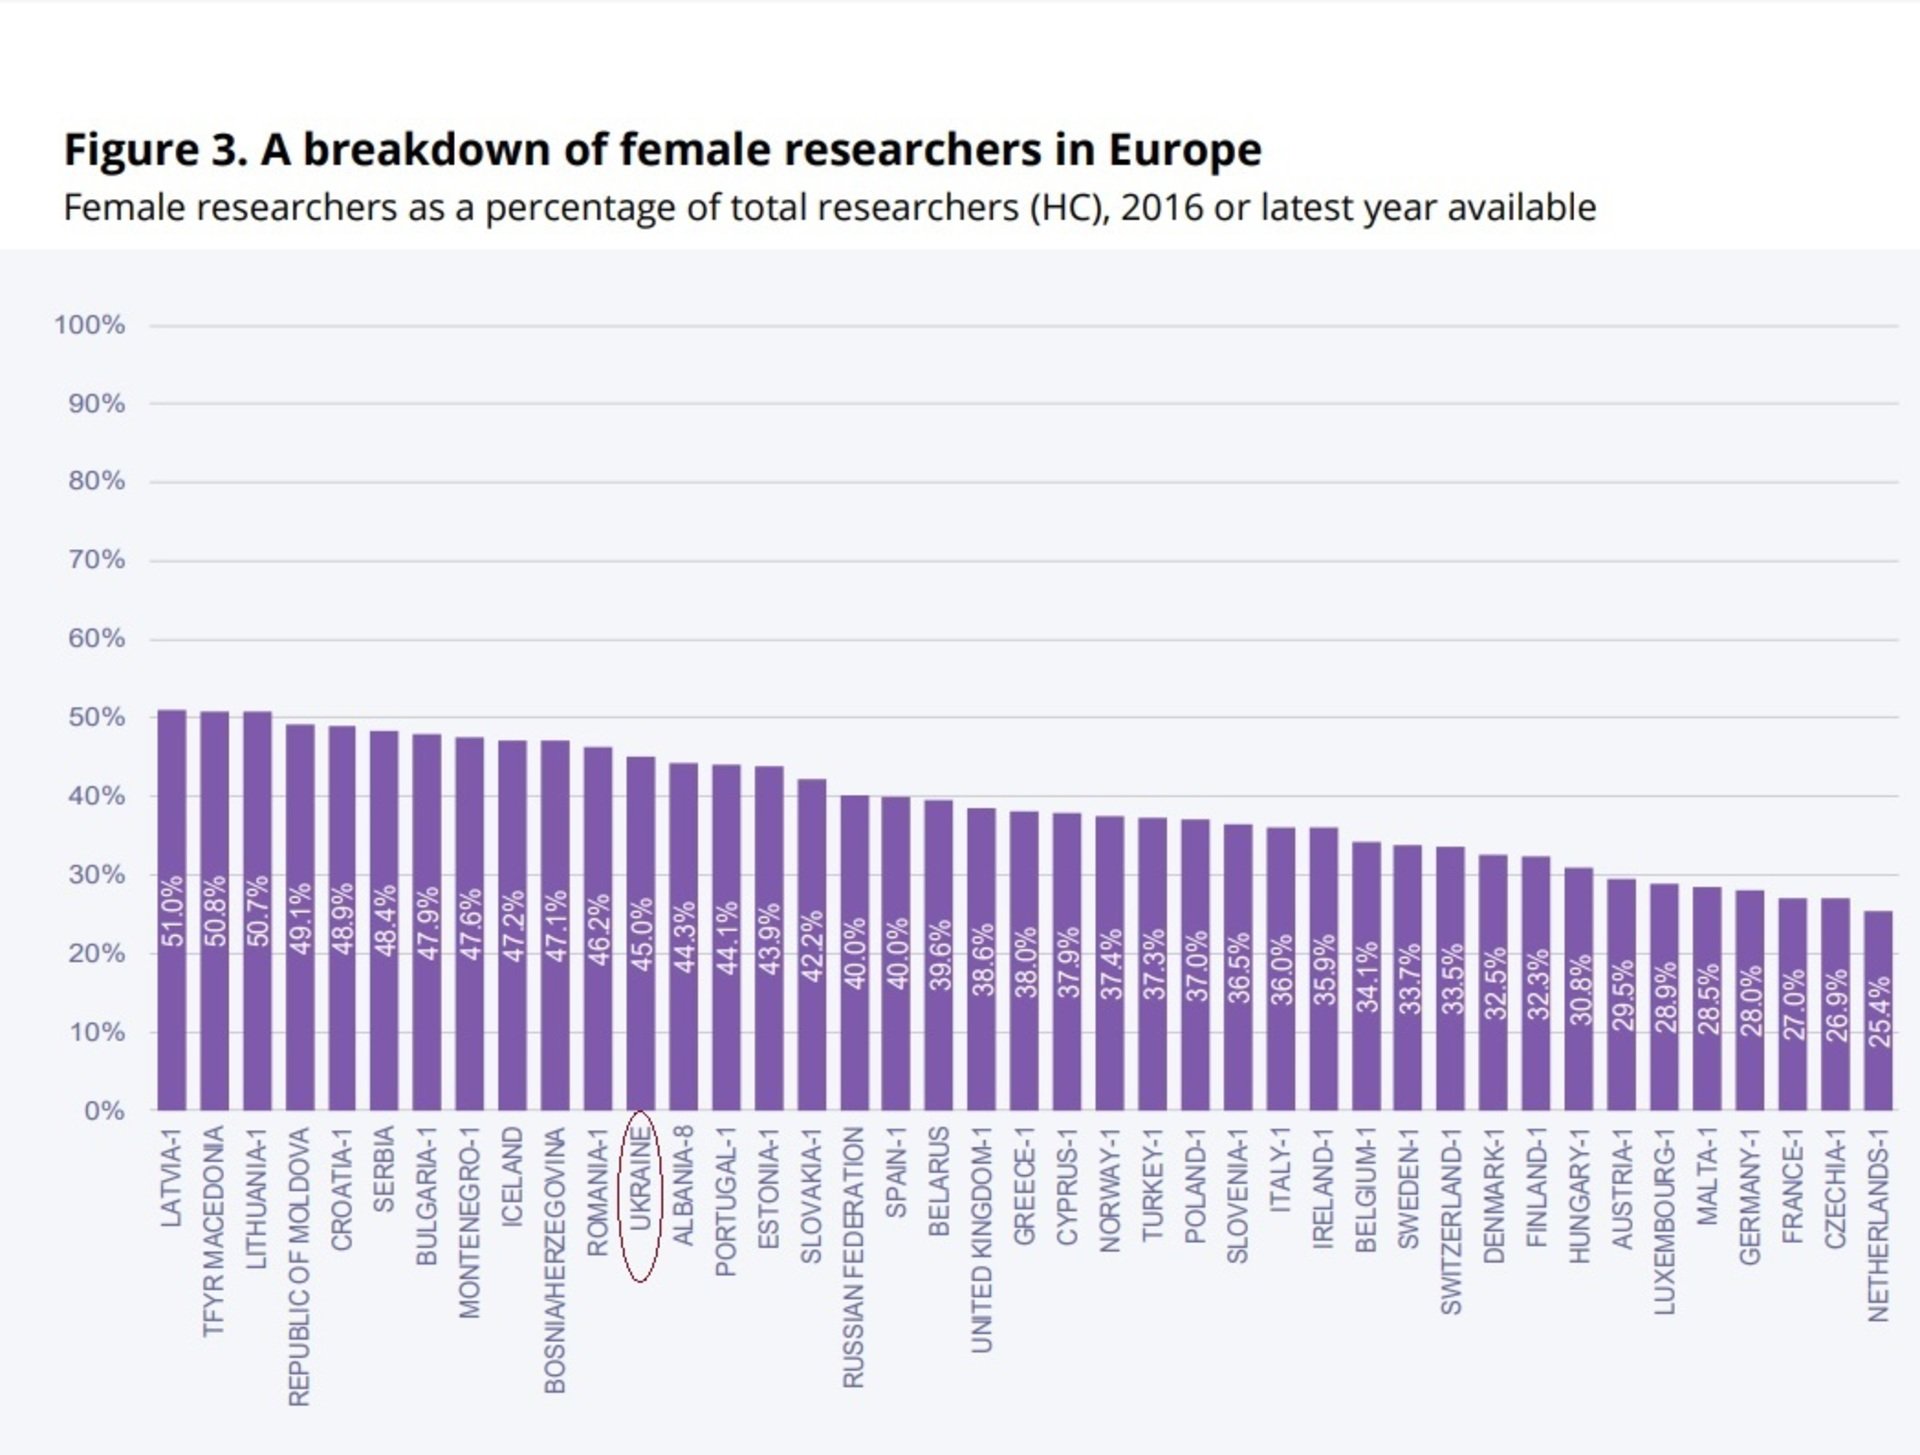 
Украина заняла 12 место по количеству женщин-ученых в Европе с показателем 45%. 